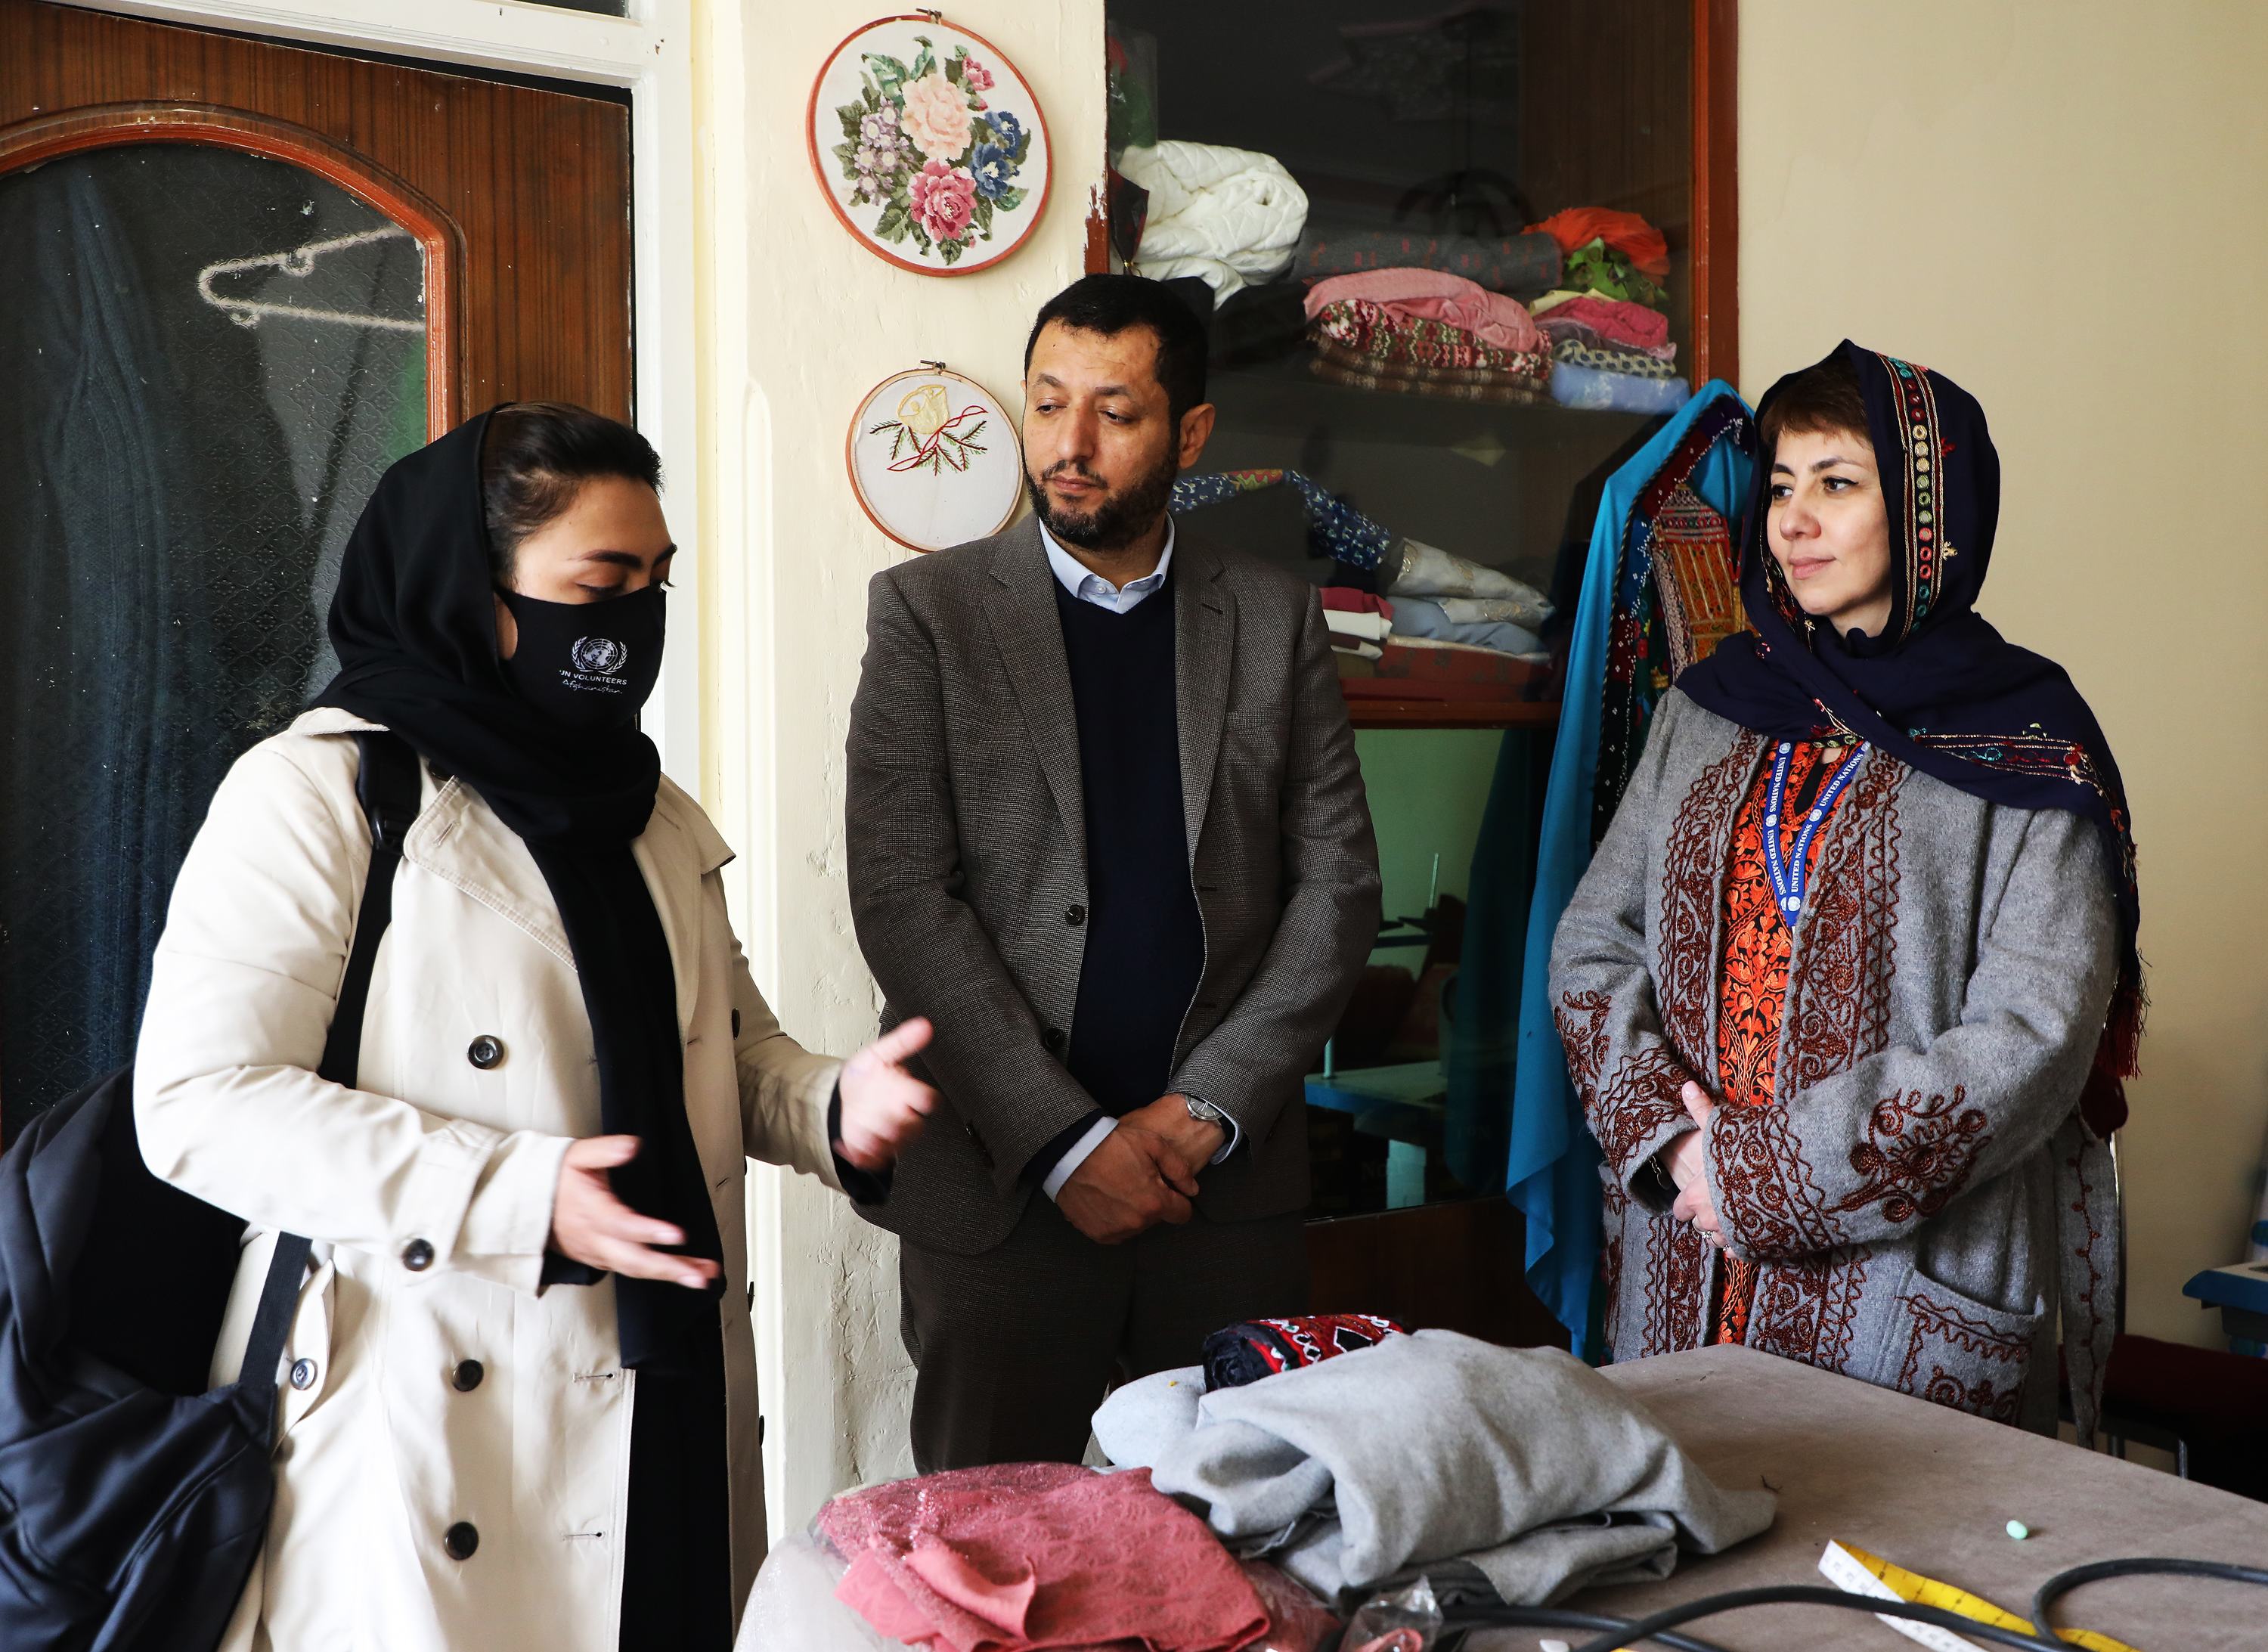 开发署驻阿富汗副代表布祖鲁科娃（右一）在巴尔赫省会见妇女代表，她们的生意得到了开发署的支持。